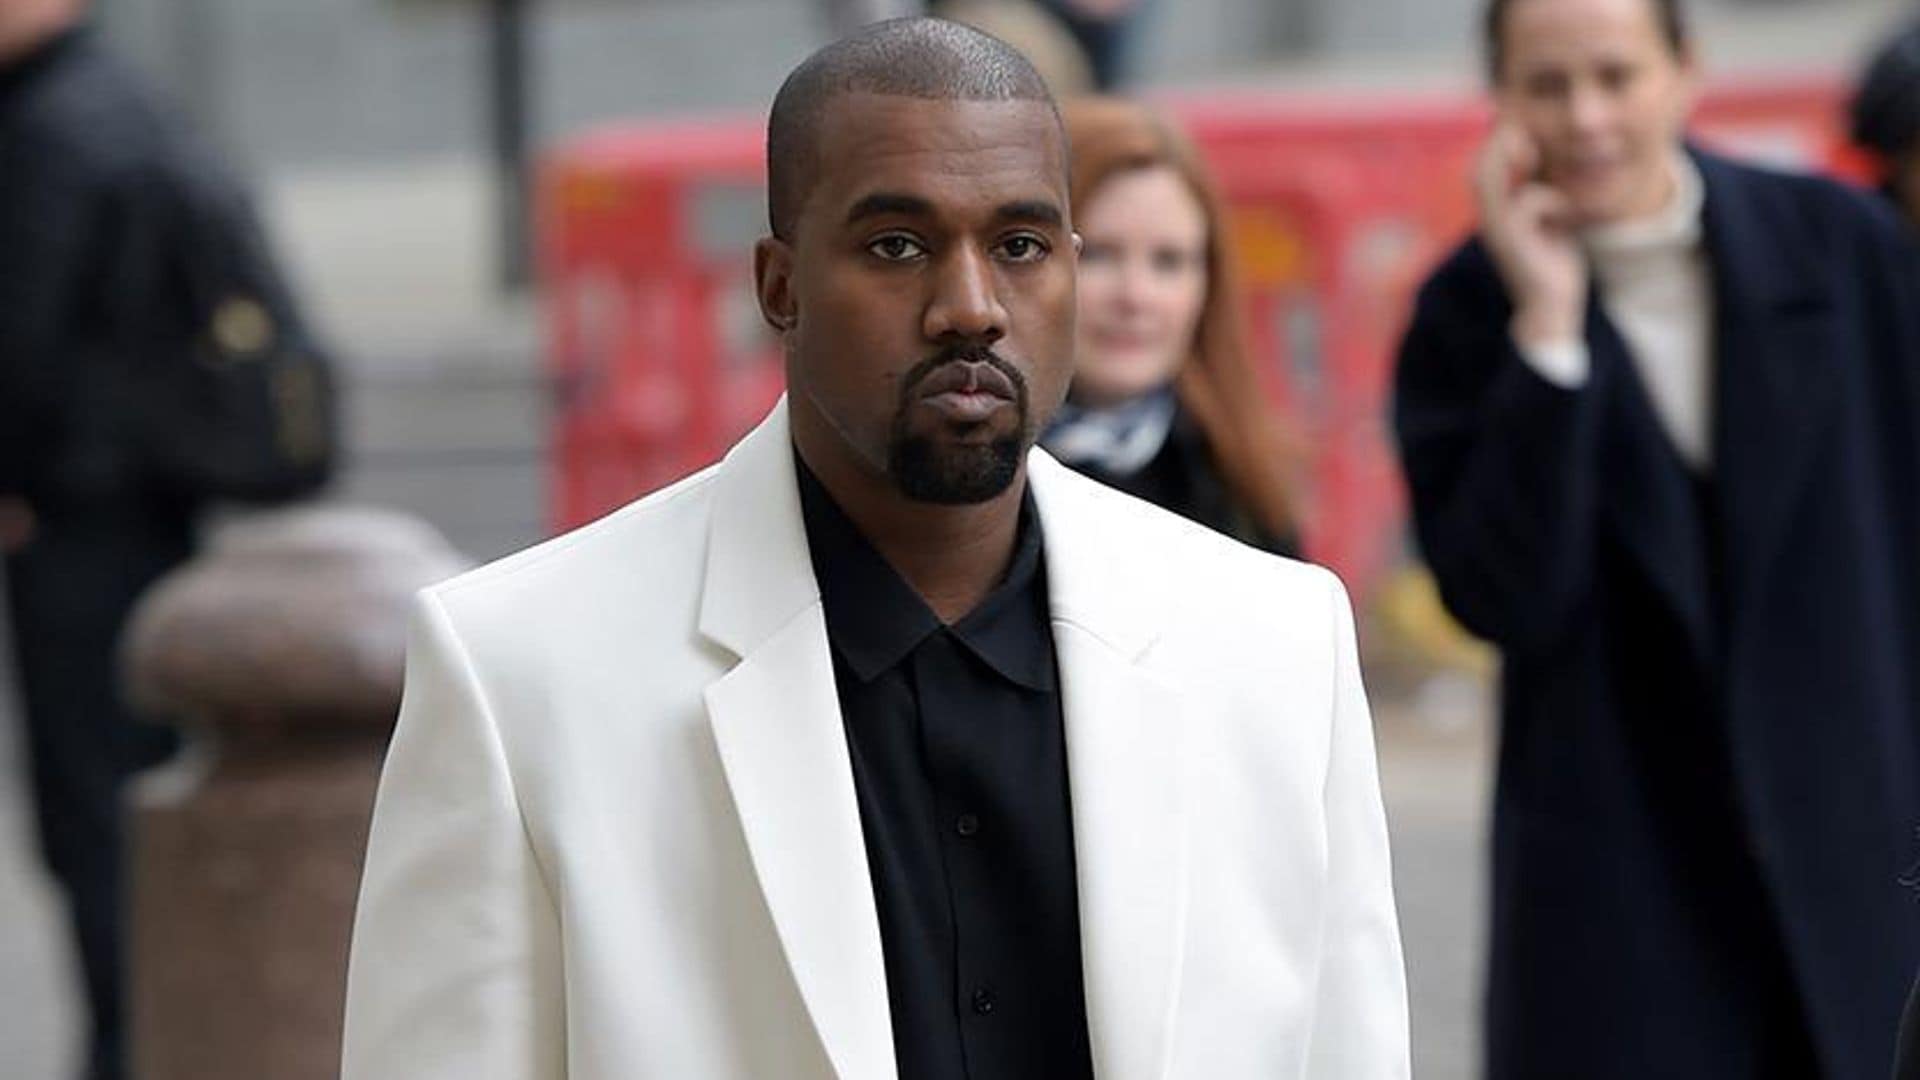 Kanye West, married to Kim Kardashian West